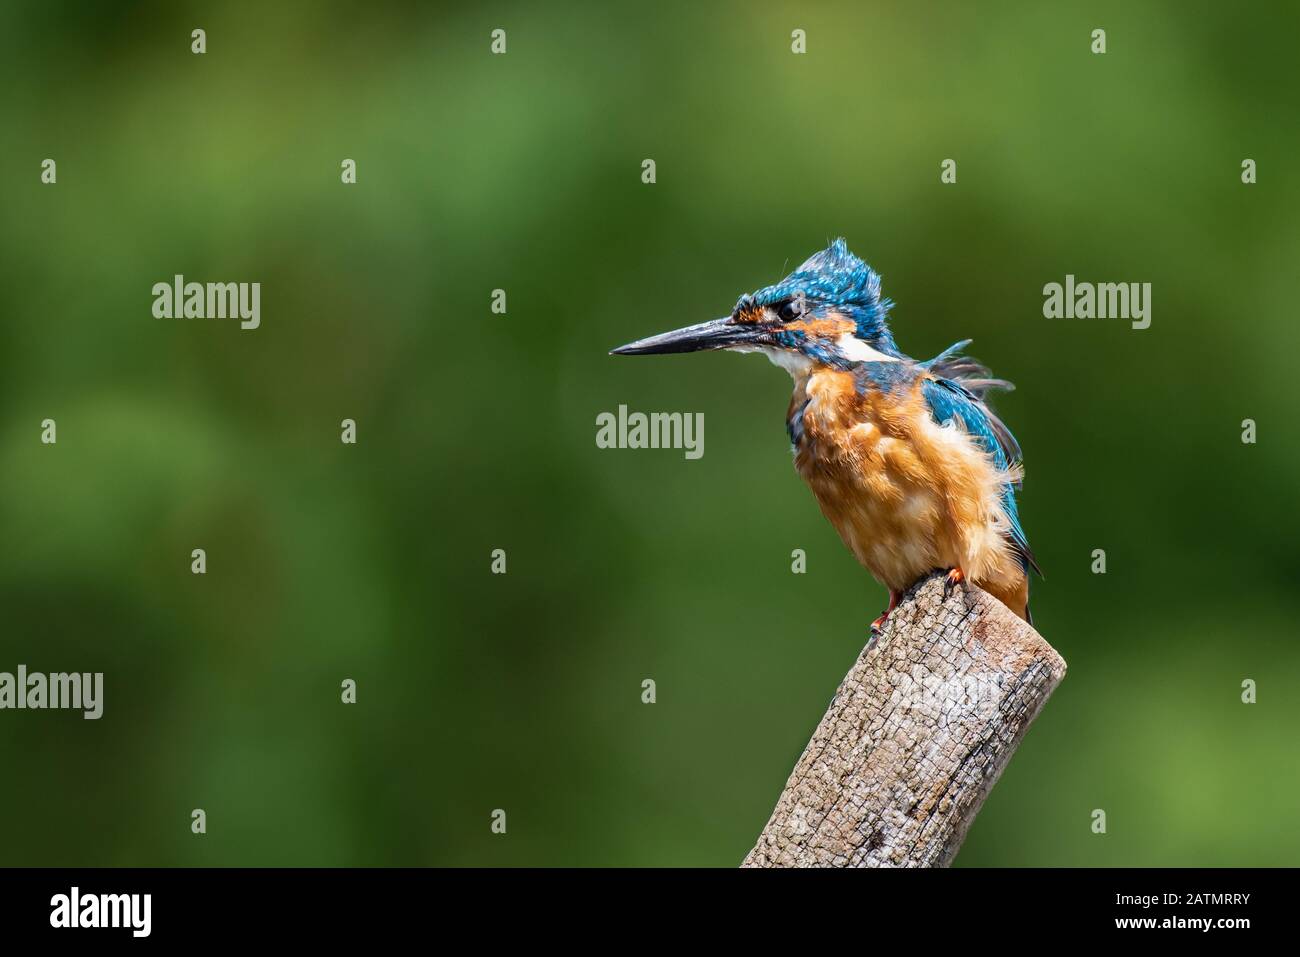 Un homme kingfisher, Alcedo atthis, est perché sur un poteau dans un vent fort qui souffle et ruffant ses plumes Banque D'Images